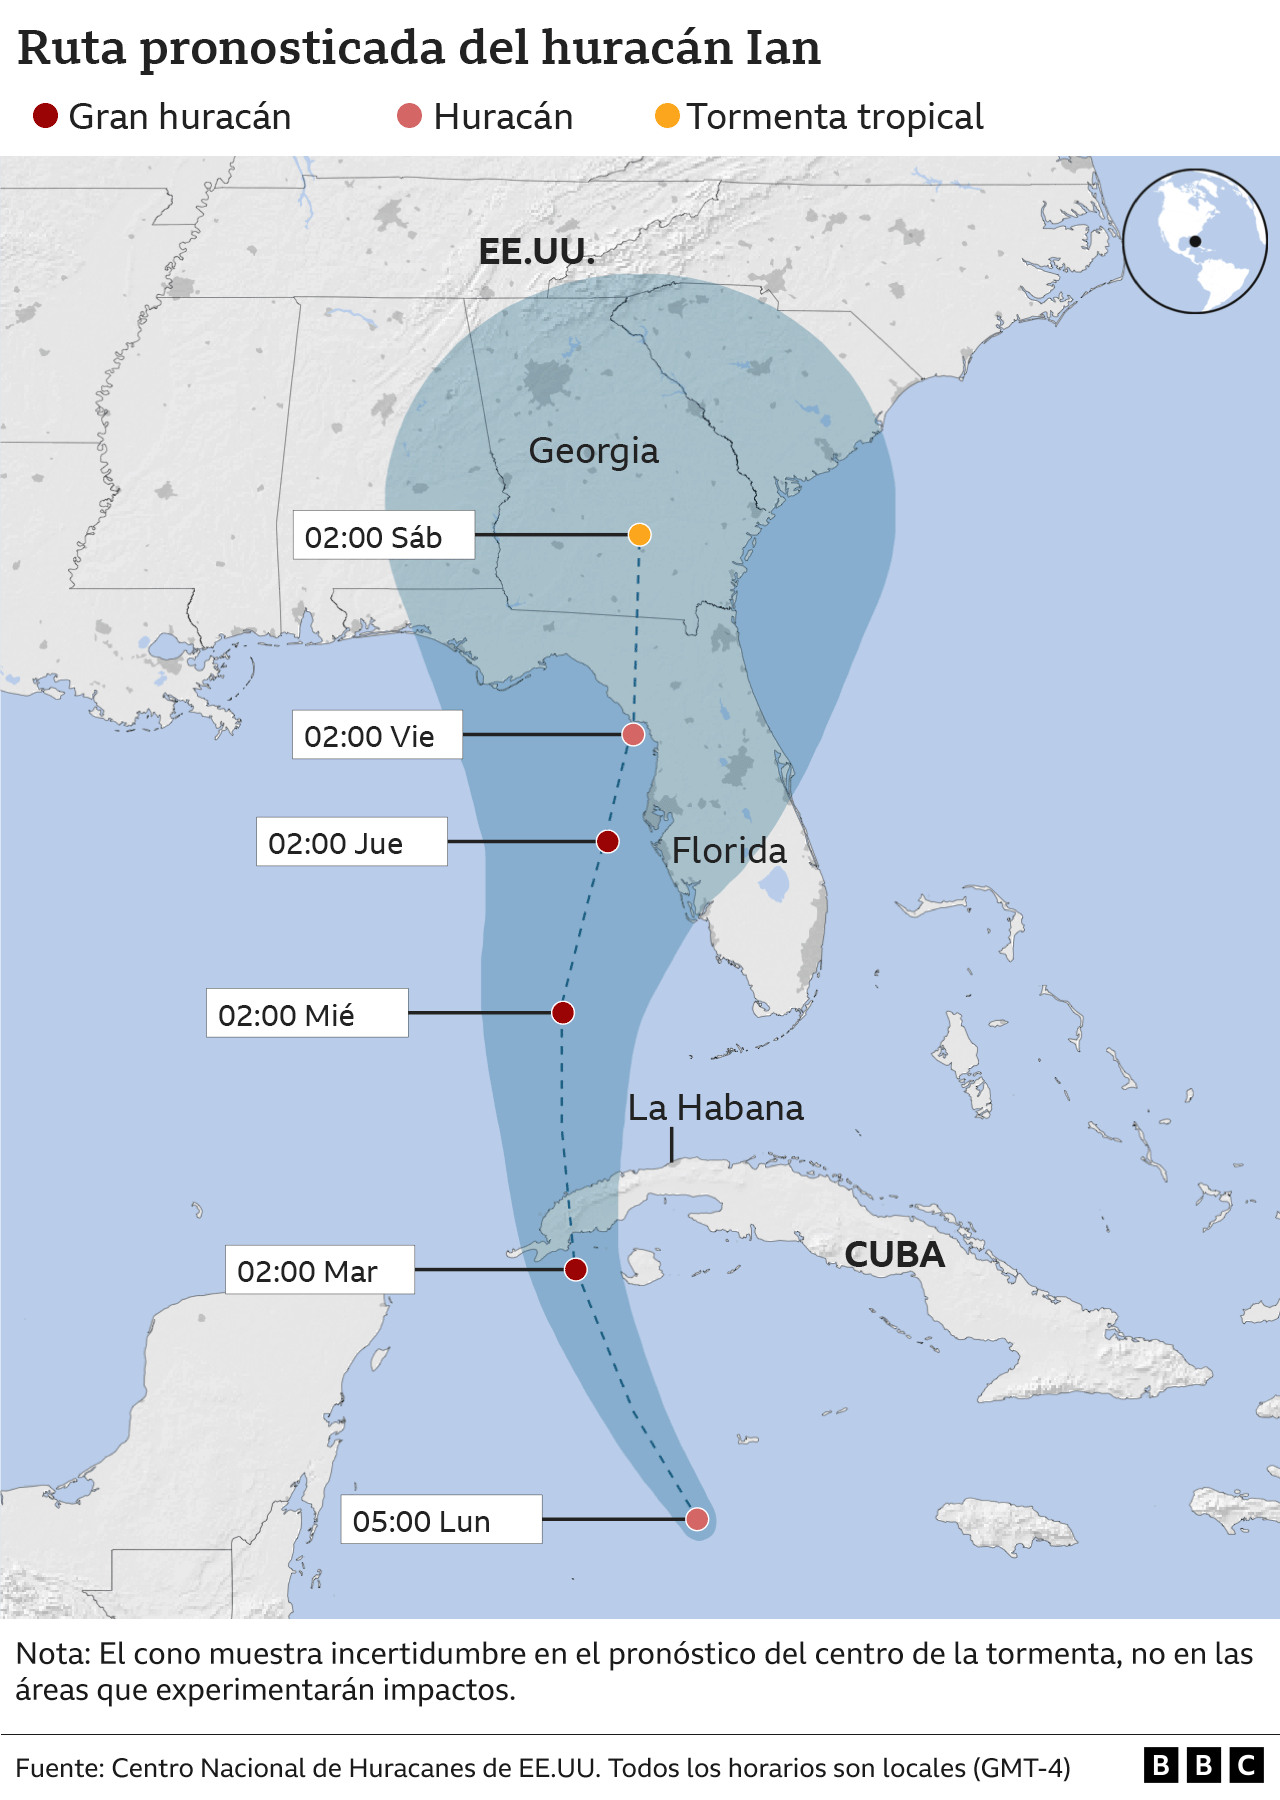 Mapa de la ruta pronosticada del huracán Ian.